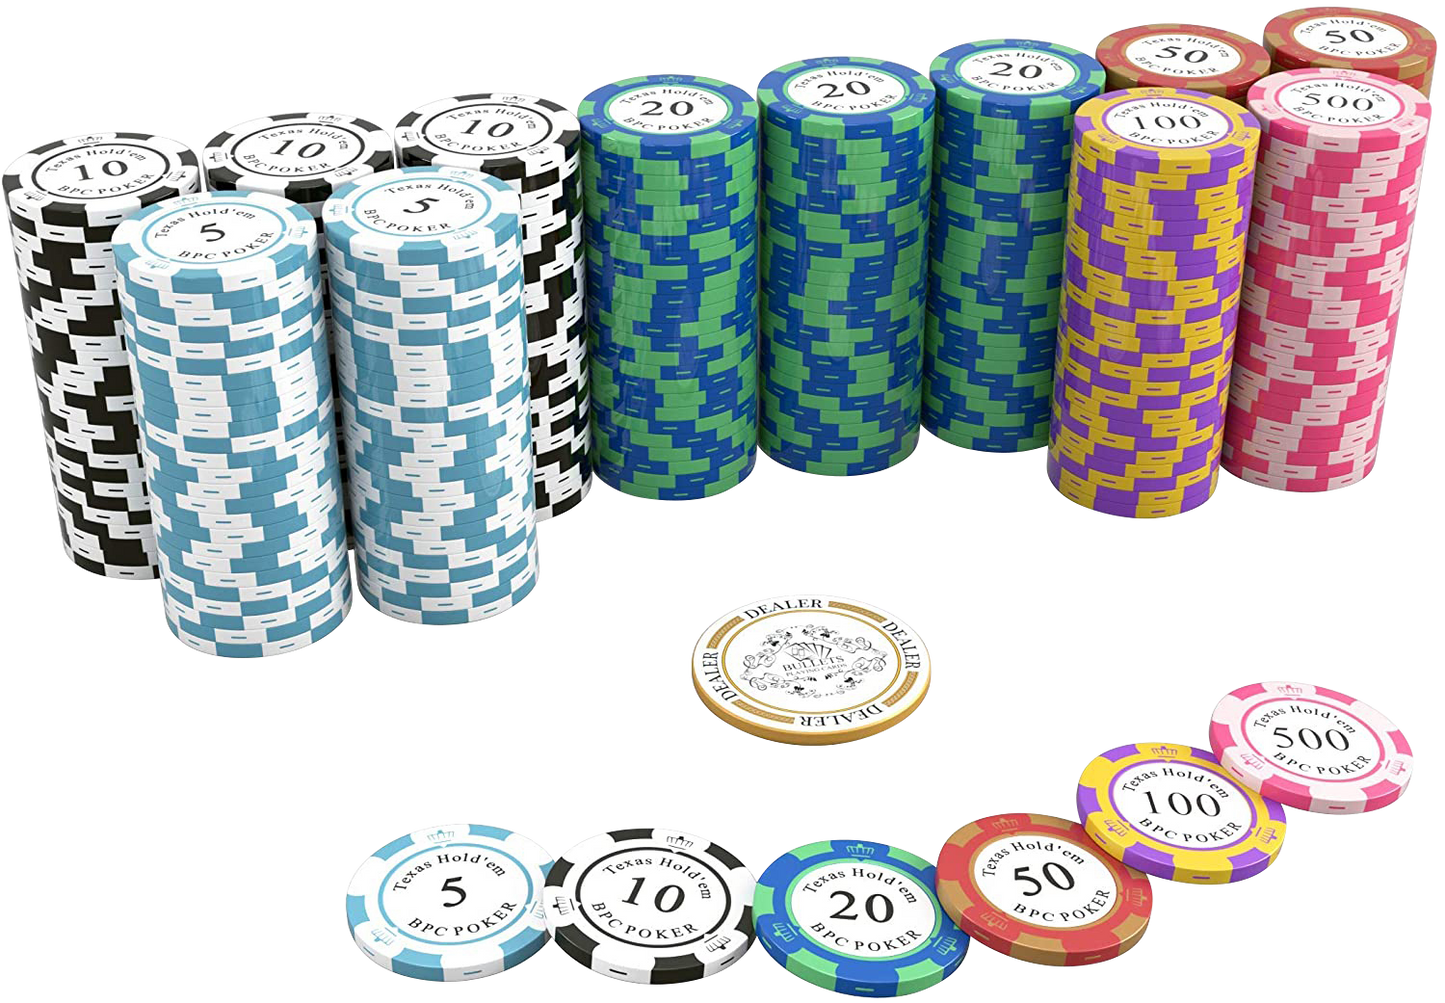 Jetons de poker en argile "Carmela" avec valeurs - Rouleau de 25